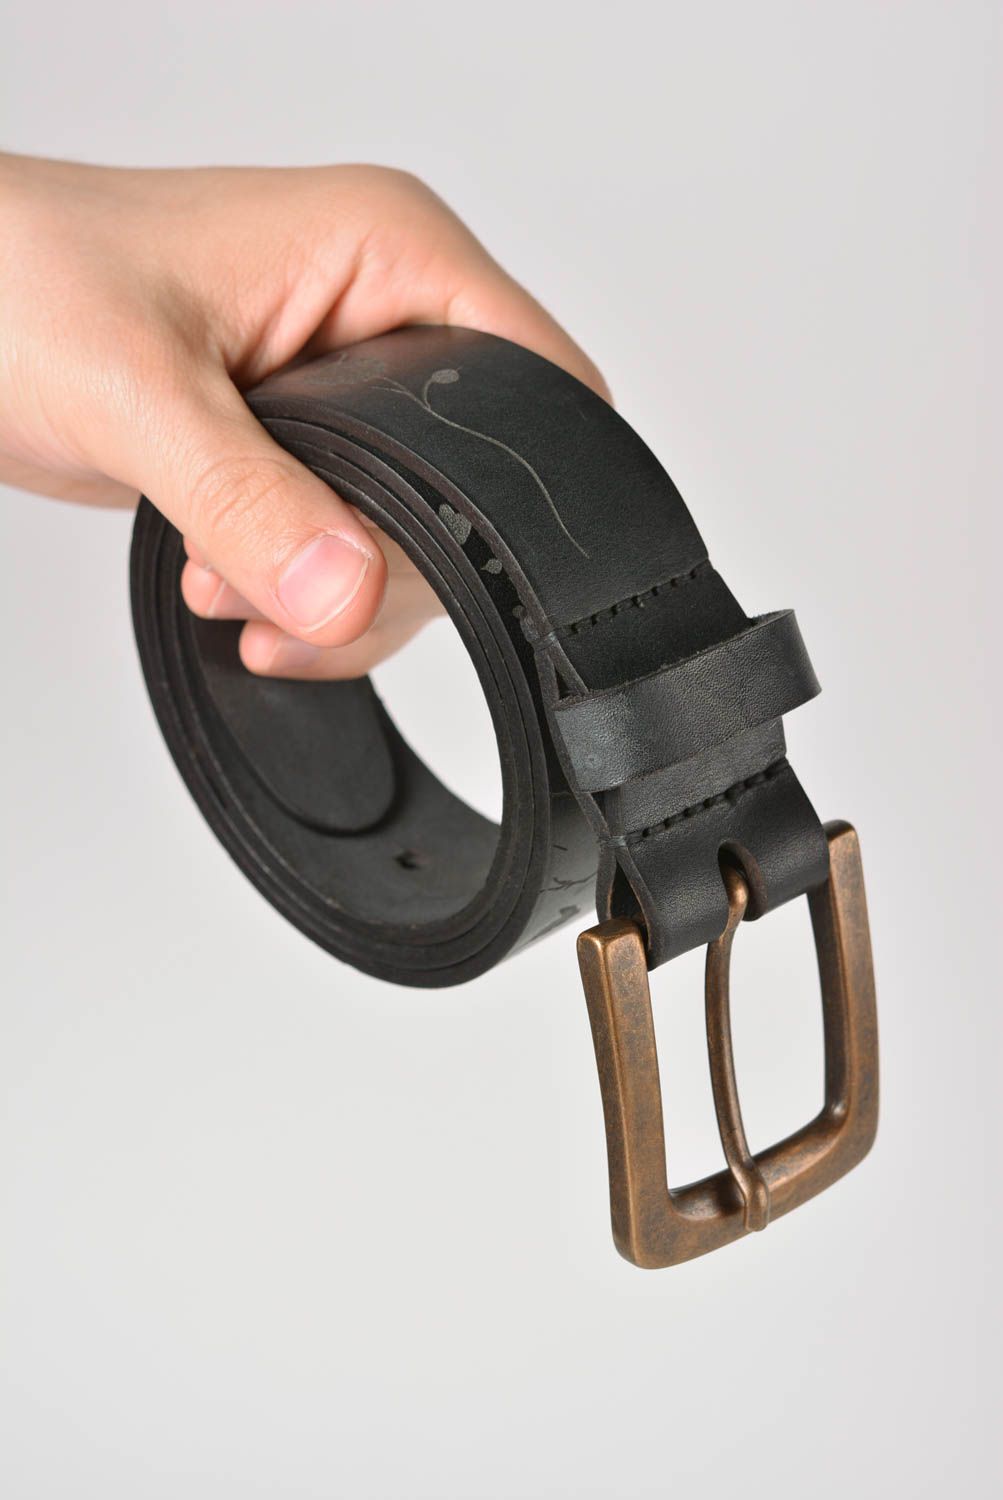 Black leather belt designer belts for men handmade leather goods gifts for him photo 4